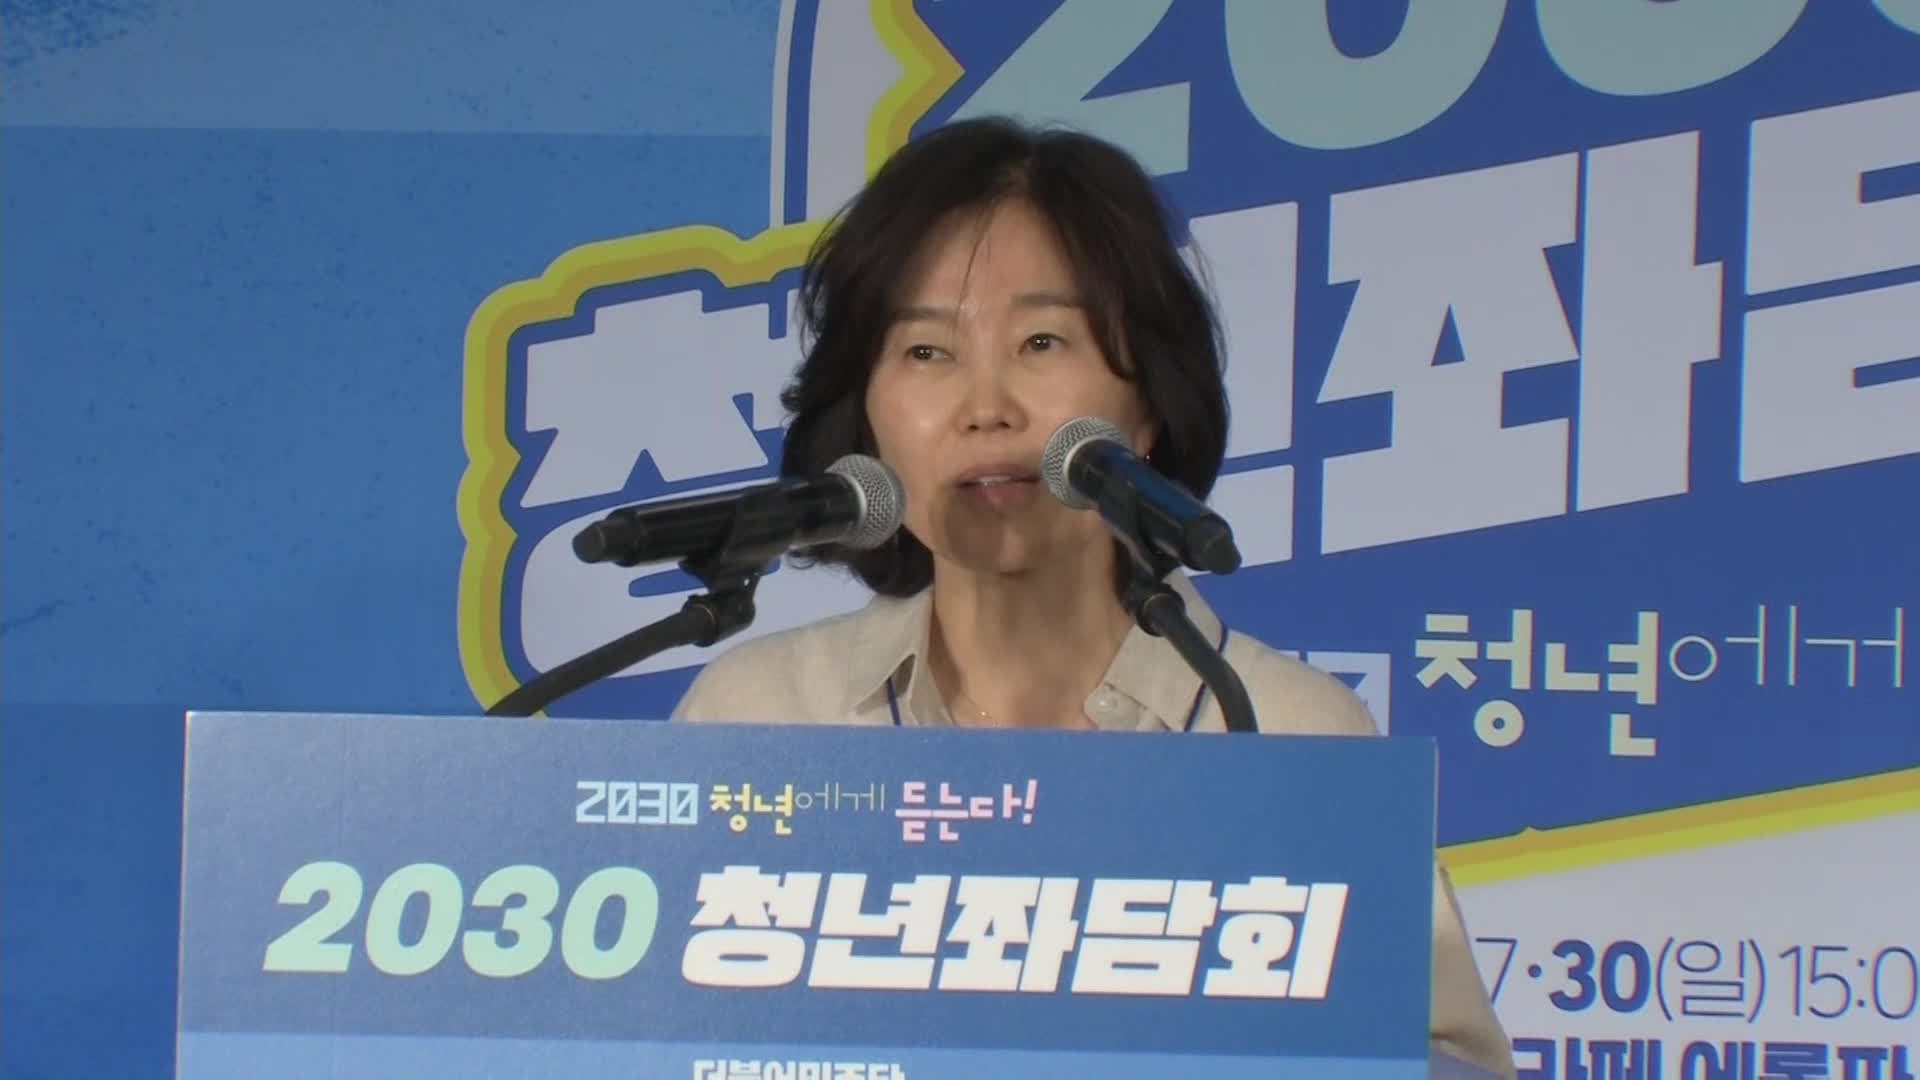 ‘2030 청년 좌담회’에서 발언하는 김은경 더불어민주당 혁신위원장 (지난달 30일, 서울 성동구)